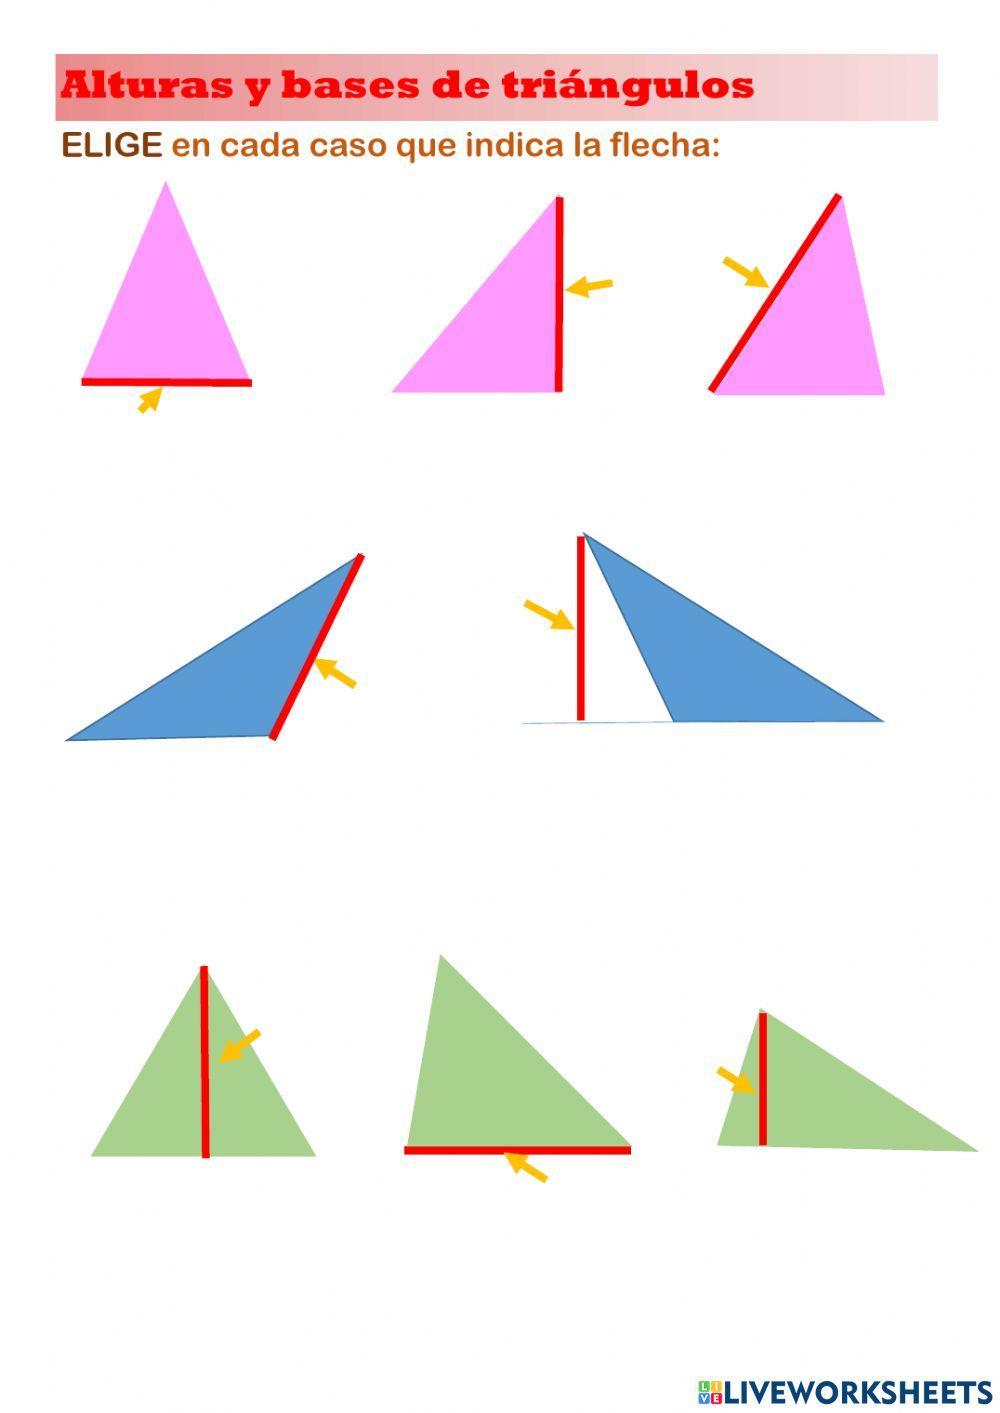 Alturas y bases de triángulos